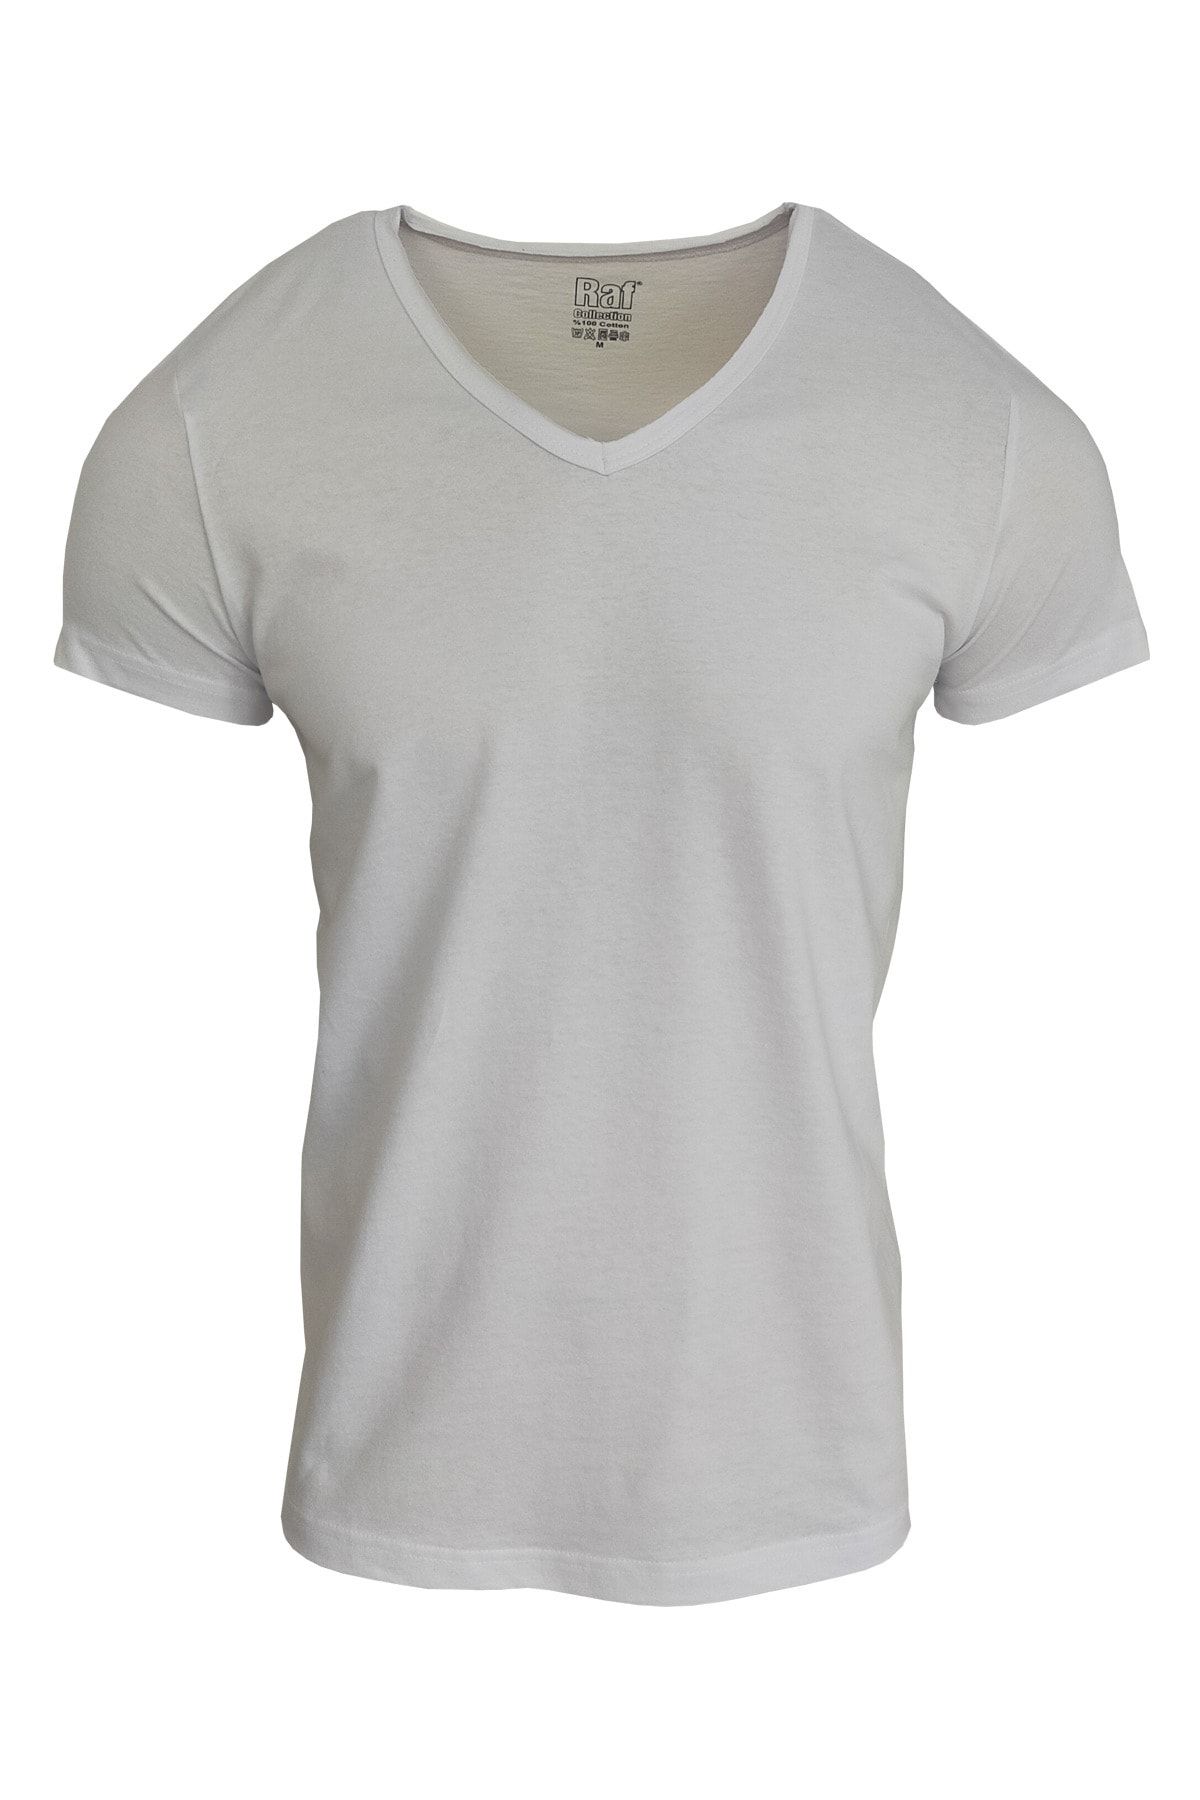 Raf Coll Unisex Basic V Yaka Beyaz T-shirt